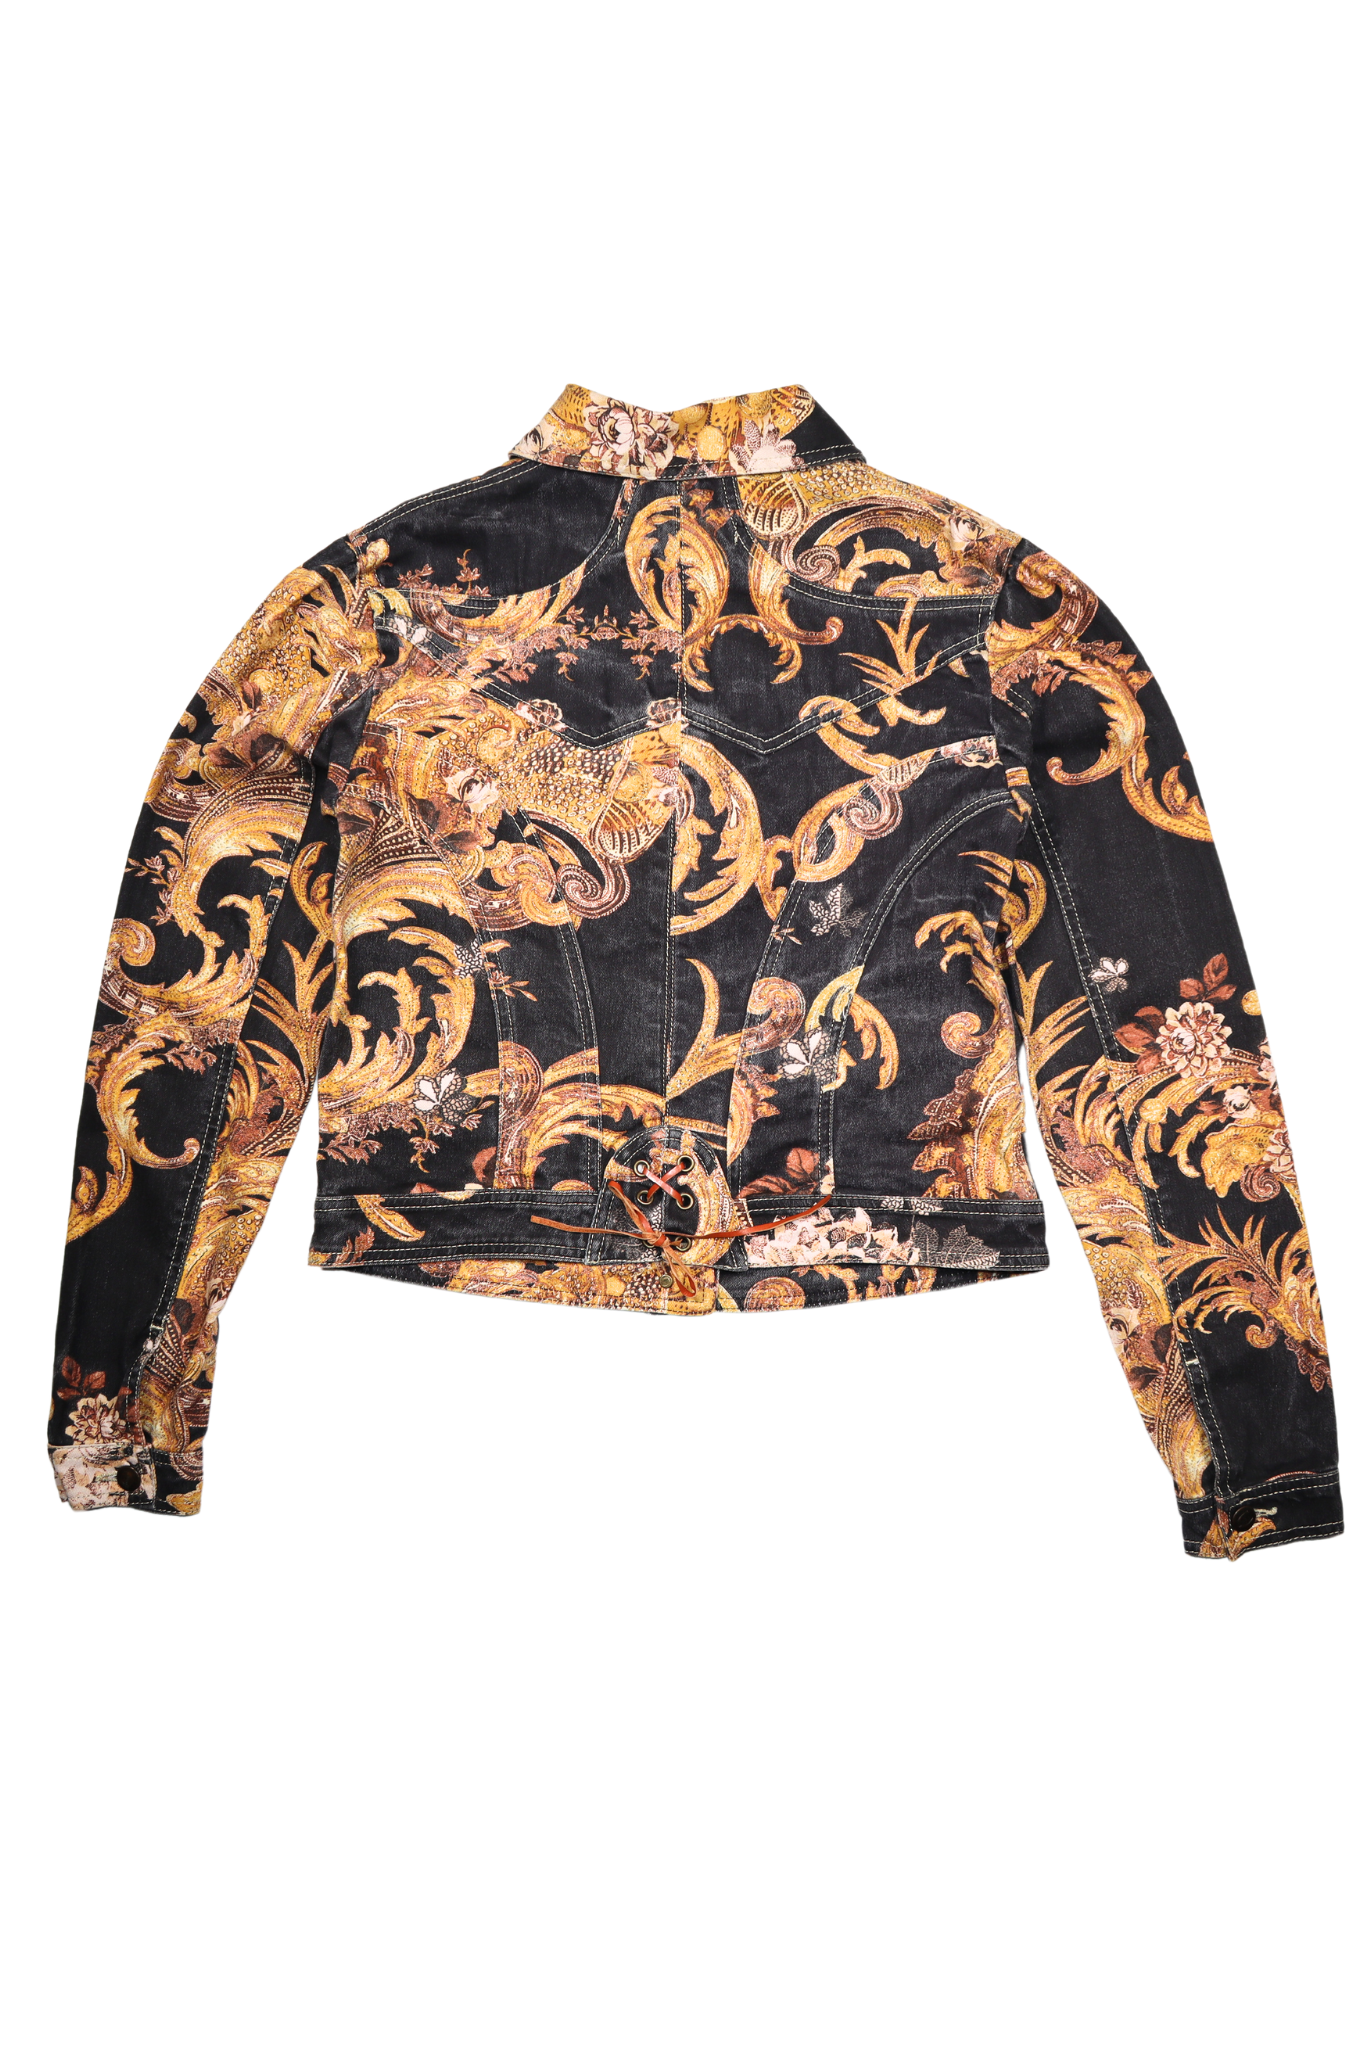 Cavalli Ornate Printed Denim Jacket